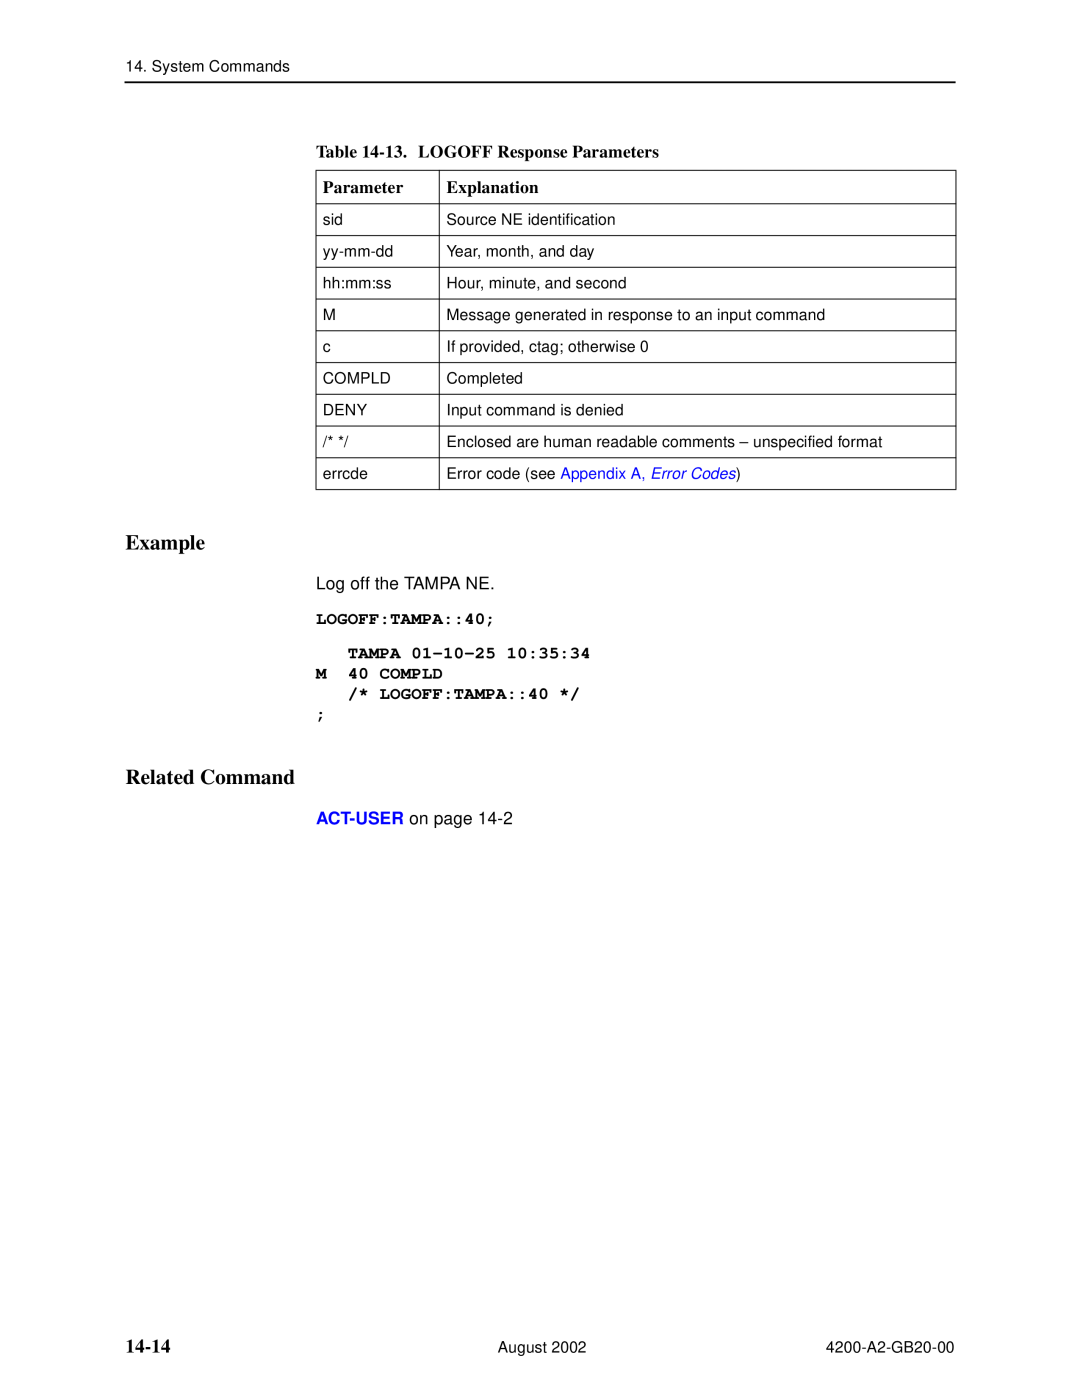 Paradyne 4200 manual 14-14, 13. LOGOFF Response Parameters, LOGOFFTAMPA40 TAMPA 01-10-25 M 40 COMPLD LOGOFFTAMPA40, Example 